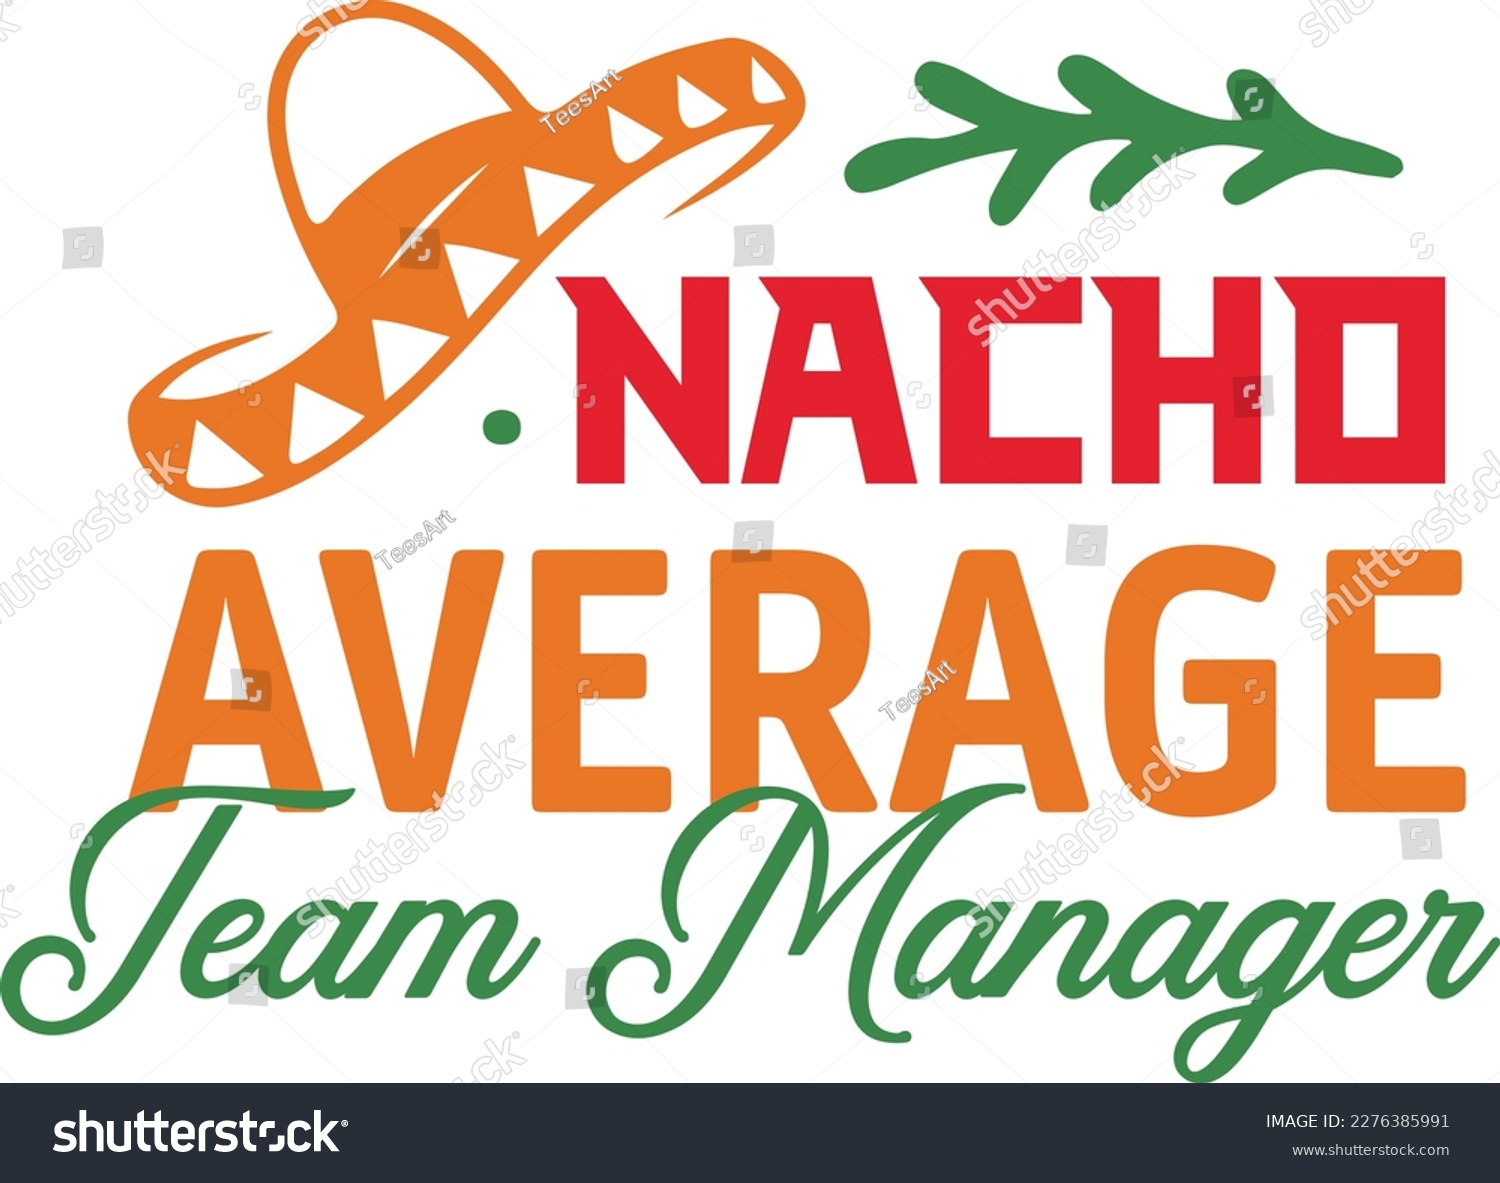 SVG of Nacho Average team manager cinco de mayo svg,Cinco de mayoo designs, nacho average svg deisgn svg